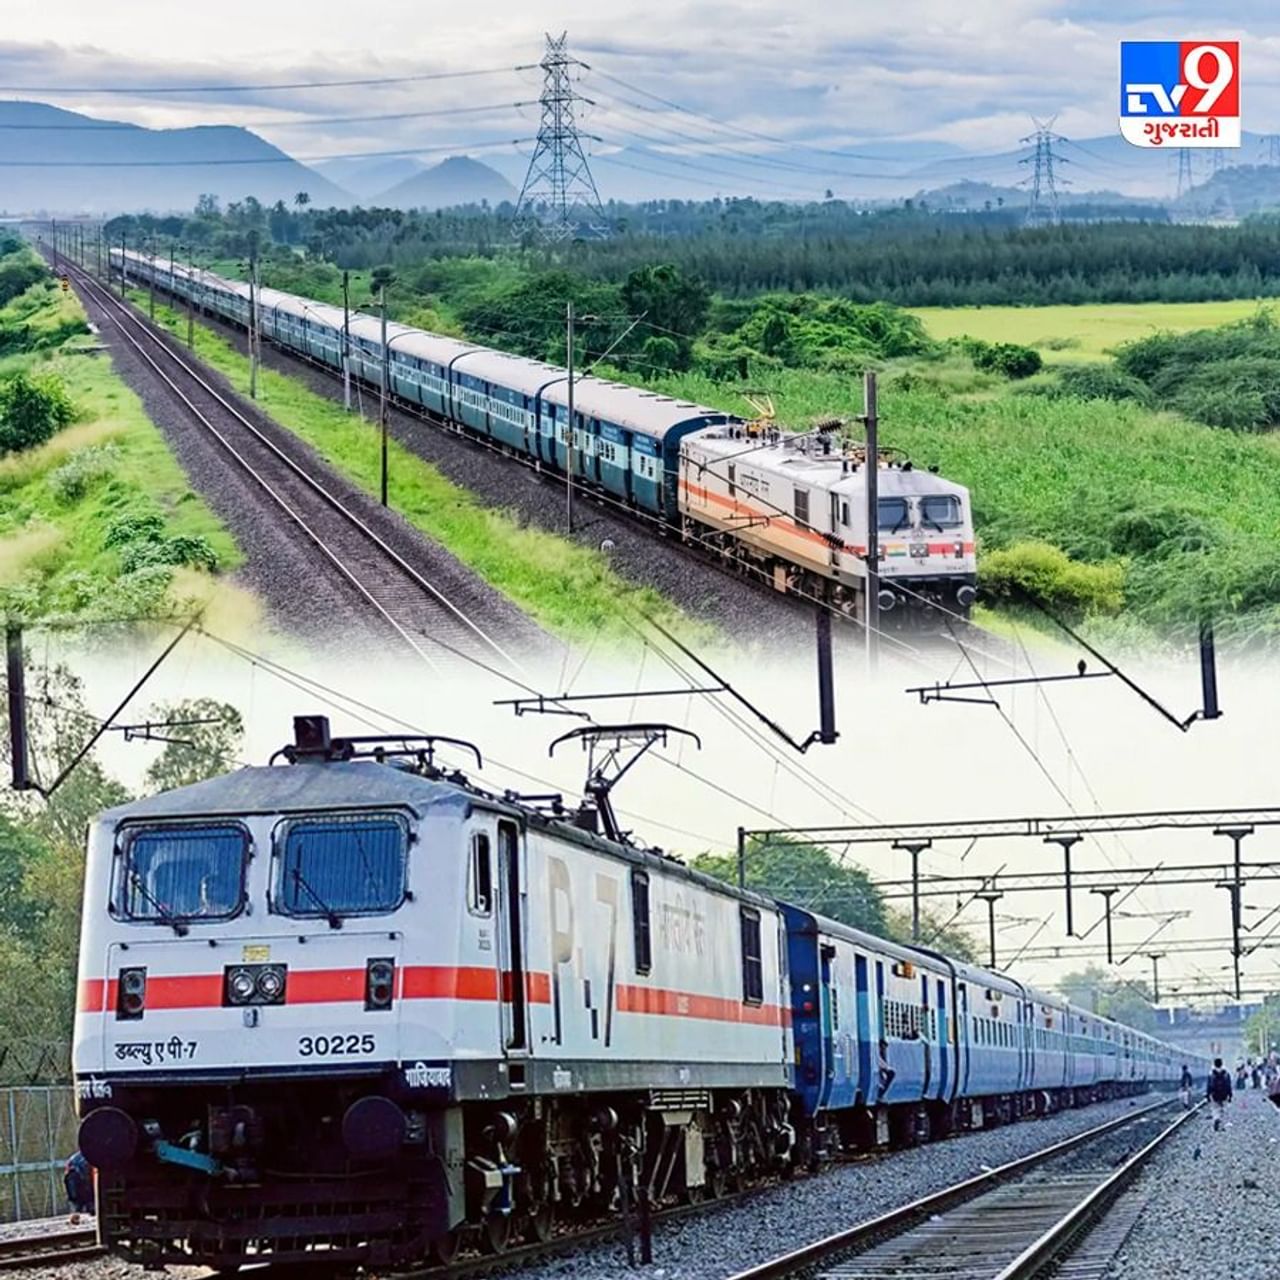 આ ભારતની 6 સૌથી લાંબી ટ્રેન સફર છે, એક ટ્રેનની મુસાફરી 80 કલાકની છે
115,000 કિમીમાં ફેલાયેલા તેના વિશાળ નેટવર્ક સાથે, ભારતીય રેલ્વે એ વિશ્વના સૌથી મોટા રેલ નેટવર્કમાંનું એક છે. ભારતમાં 7349 સ્ટેશનો પરથી દરરોજ 20000 થી વધુ પેસેન્જર ટ્રેનો અને 7000 થી વધુ માલસામાન ટ્રેનો દોડે છે. અહીં આજે અમે ભારતીય ટ્રેનના તે લાંબા રૂટ વિશે વાત કરવા જઈ રહ્યા છીએ, જેના વિશે તમે ભાગ્યે જ જાણતા હશો.